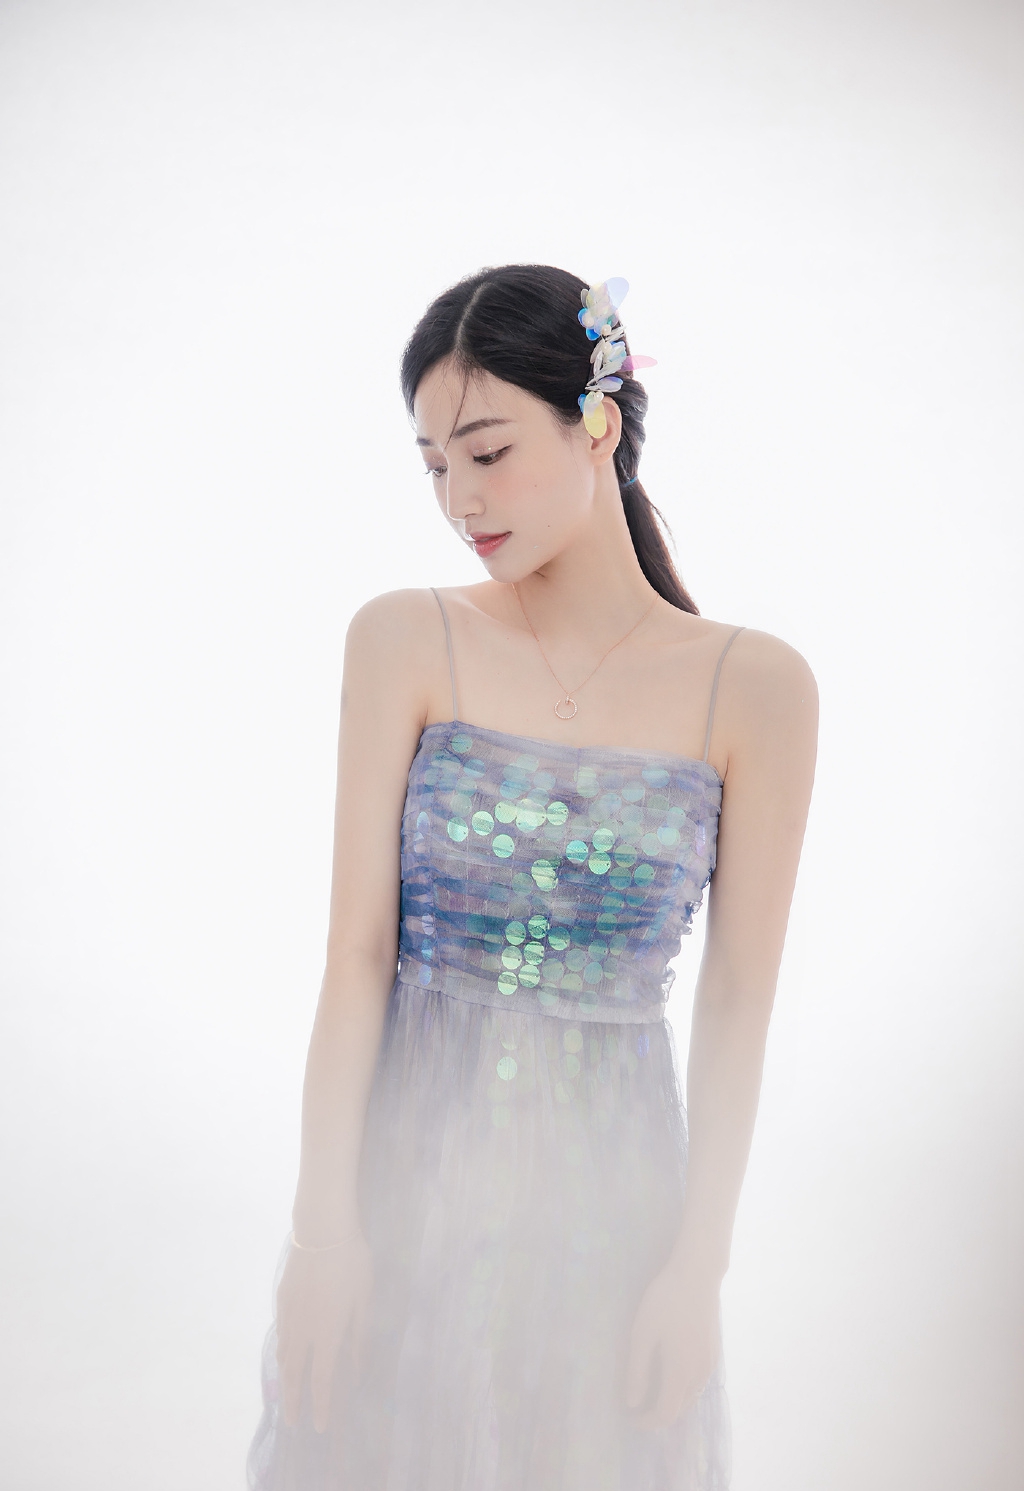 韩国极品女神美人鱼妆气质时尚写真摄影  第1张